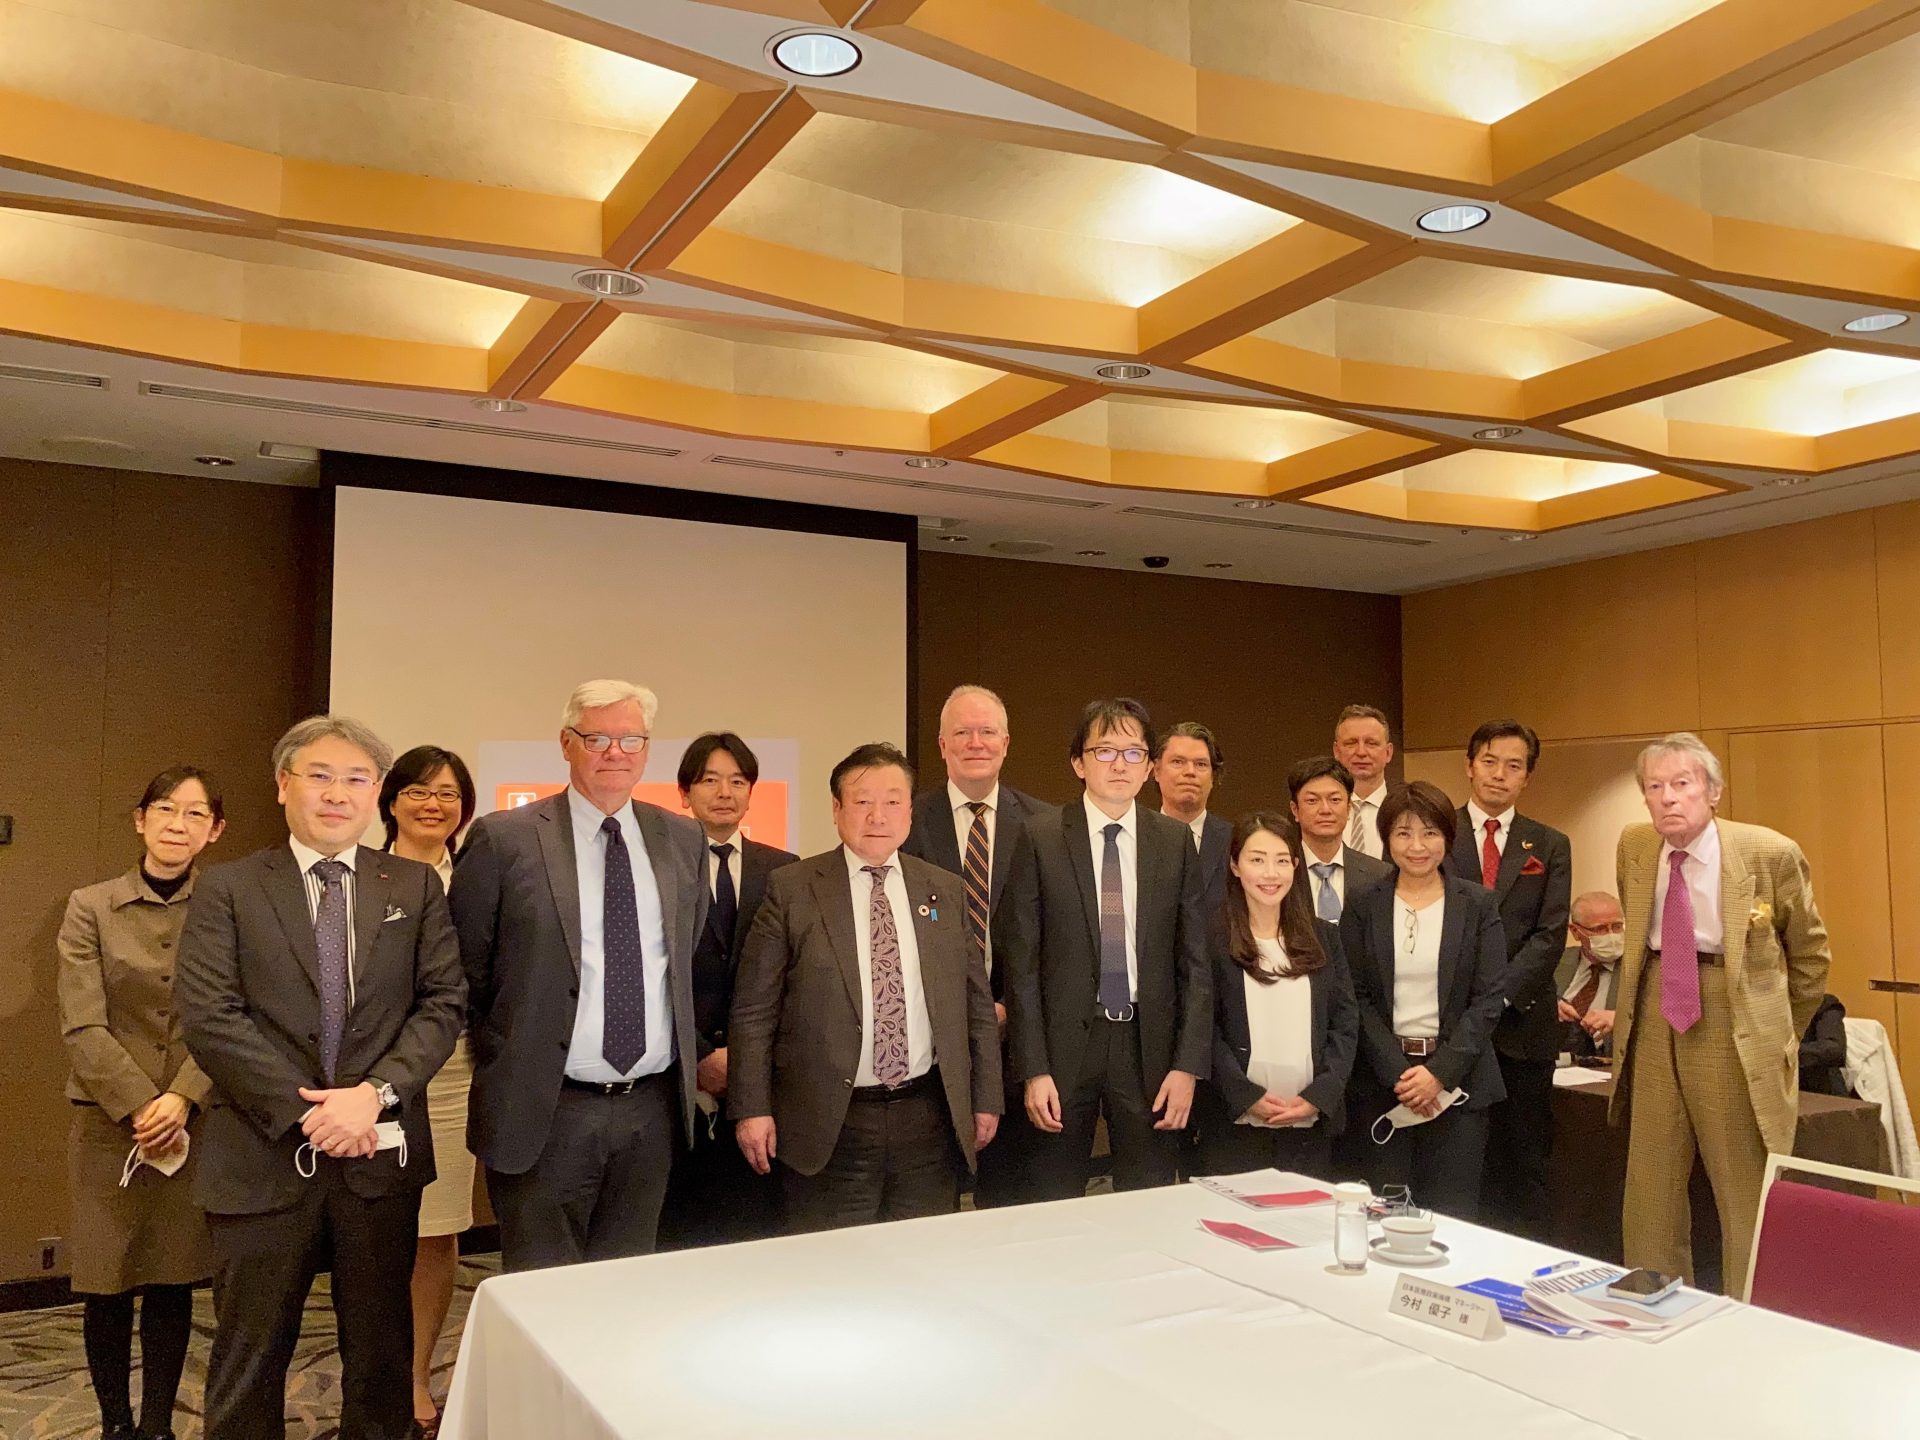 【講演報告】「日本・デンマーク 不妊治療における政策形成 マルチステークホルダーによるラウンドテーブル会合」（2022年3月11日、ザ・キャピトルホテル東急）